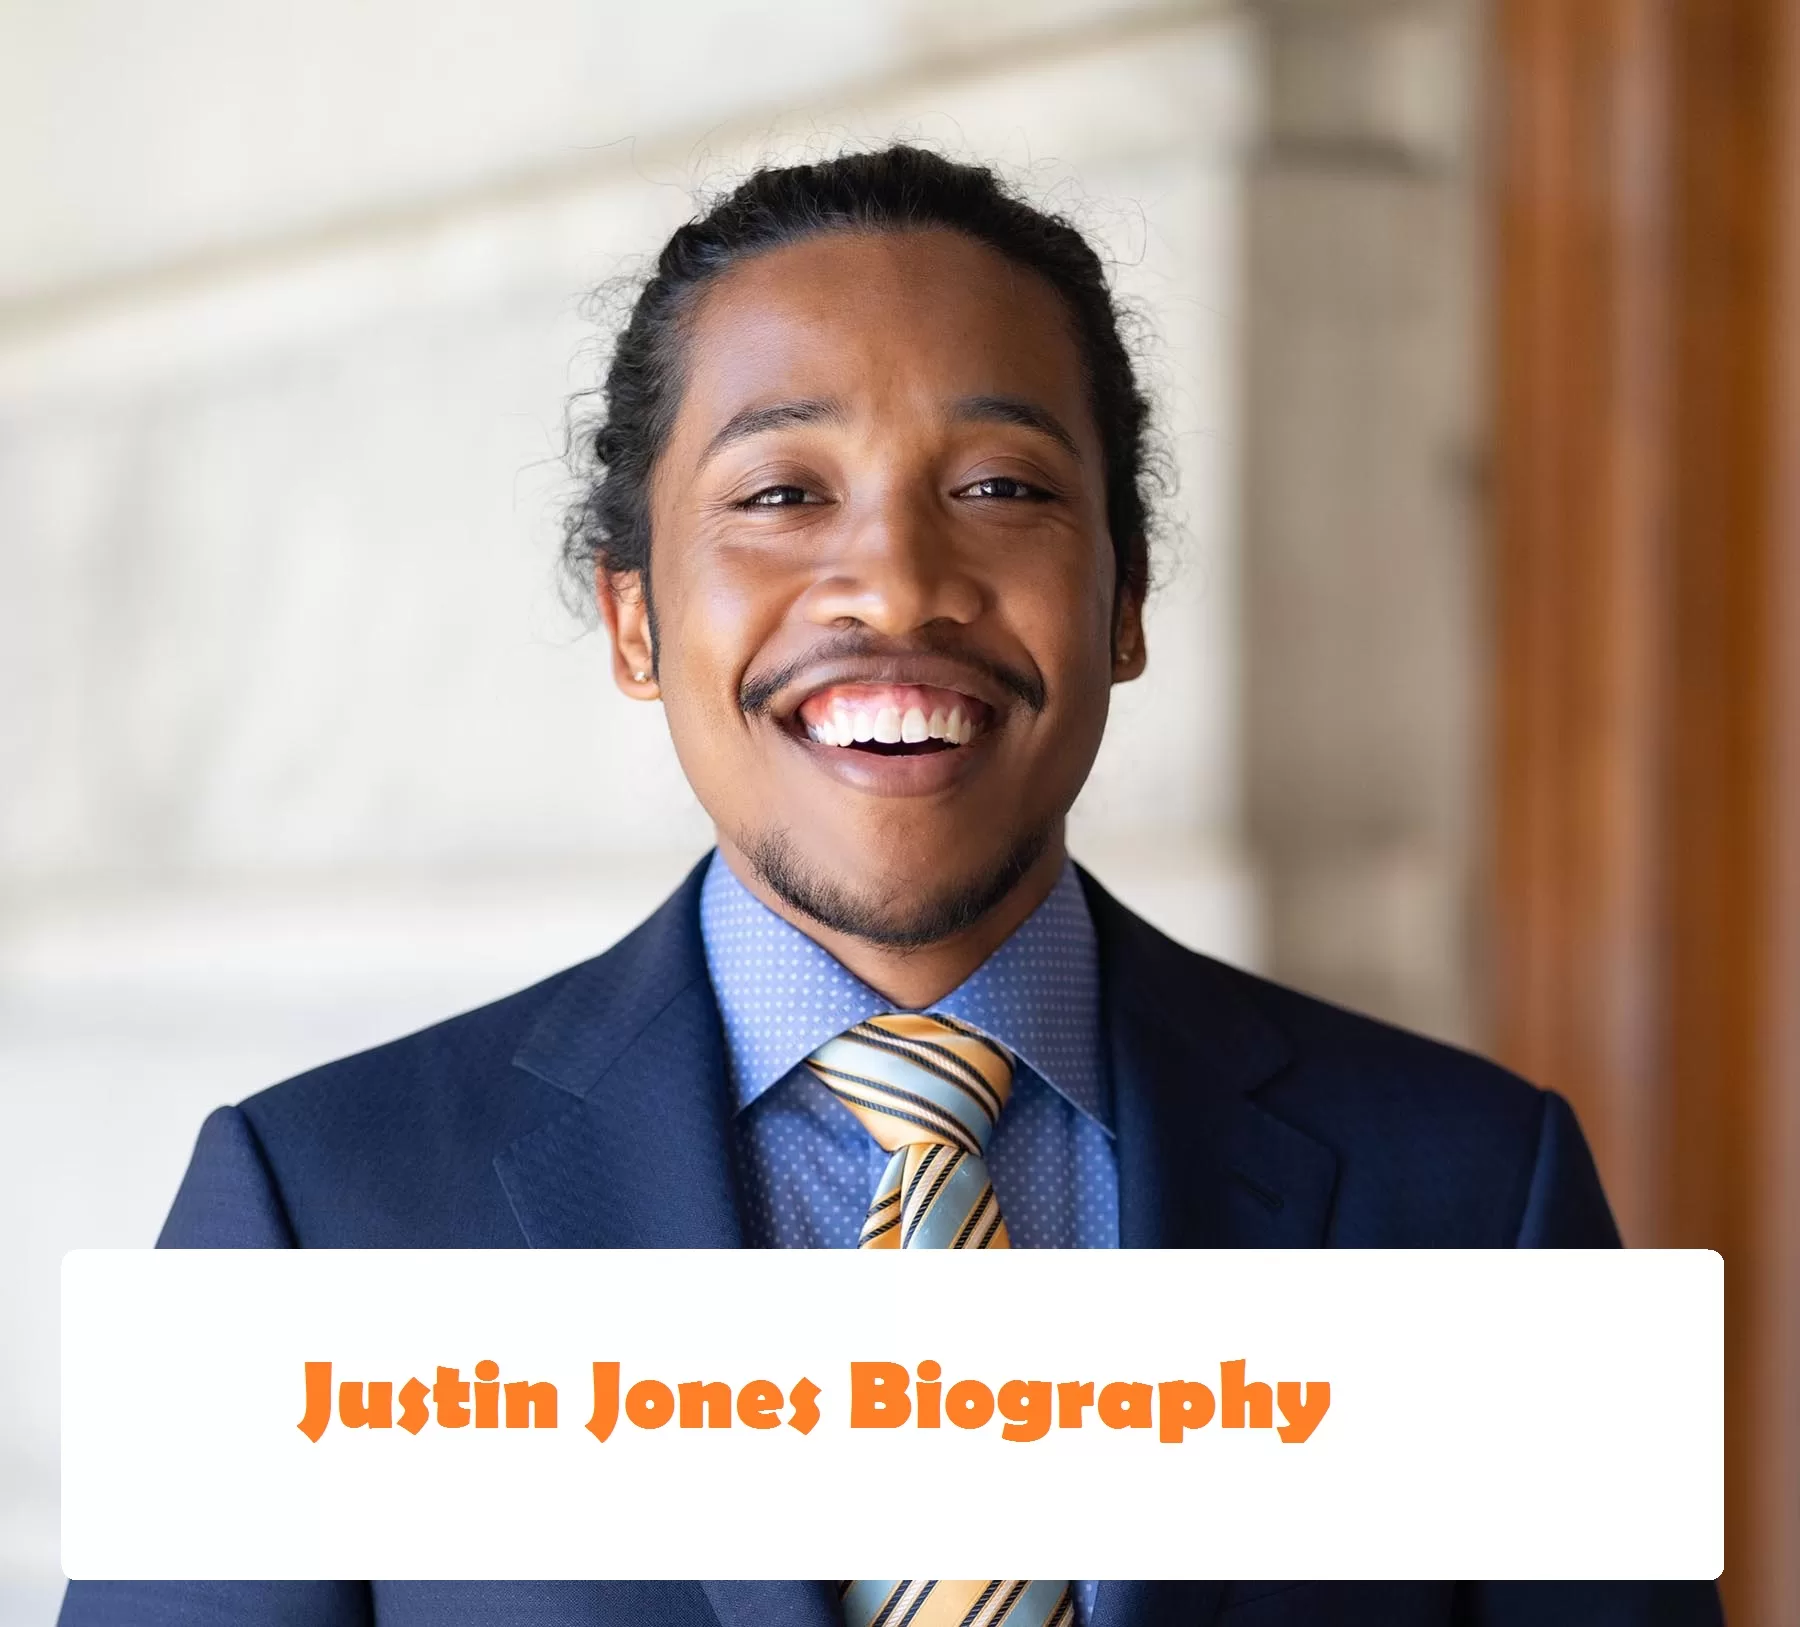 Justin Jones Biography